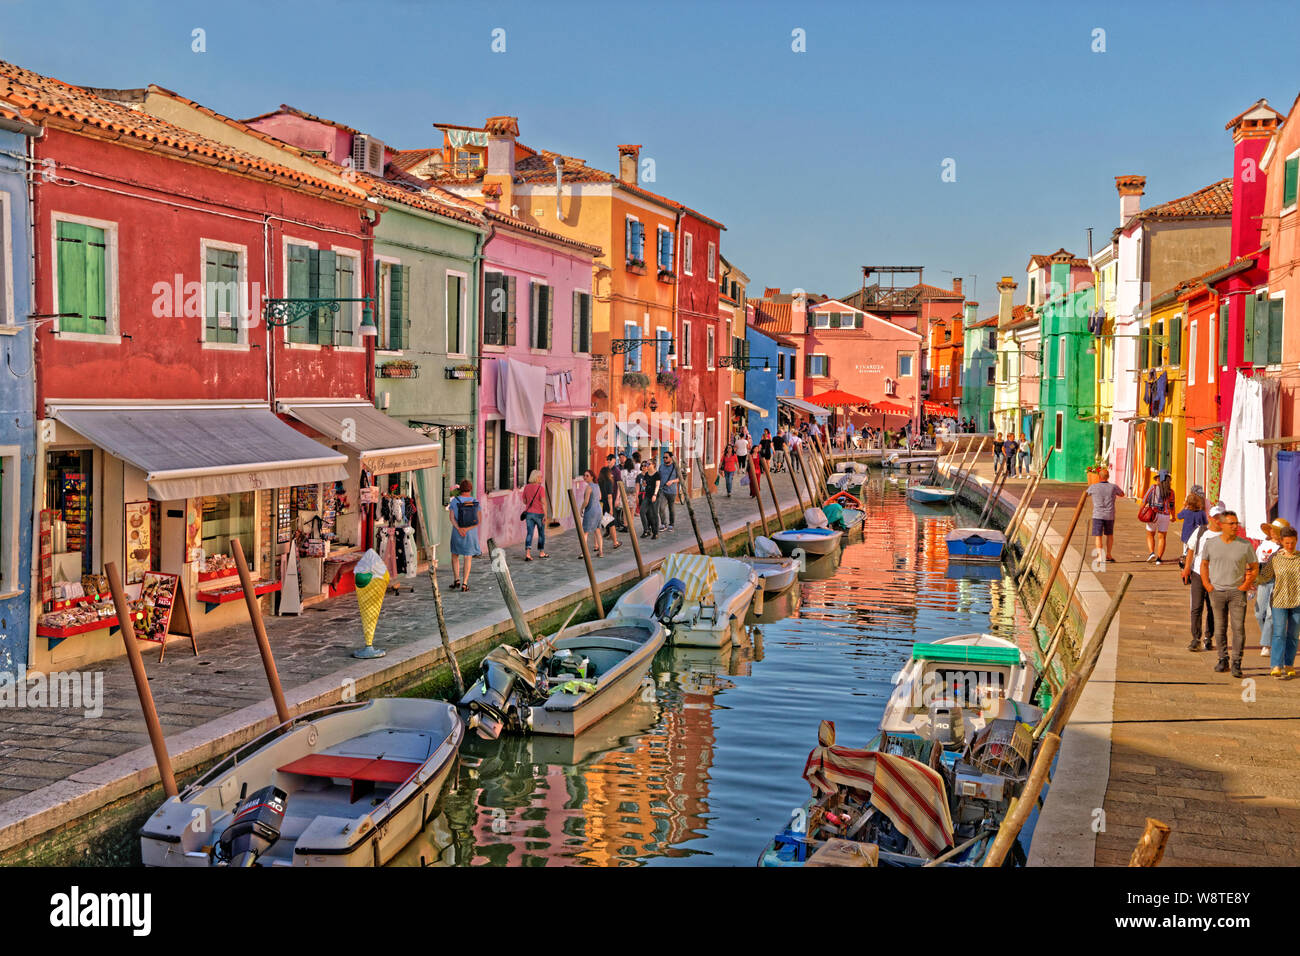 Burano island in the Venetian Lagoon, Venice, Italy. Stock Photo